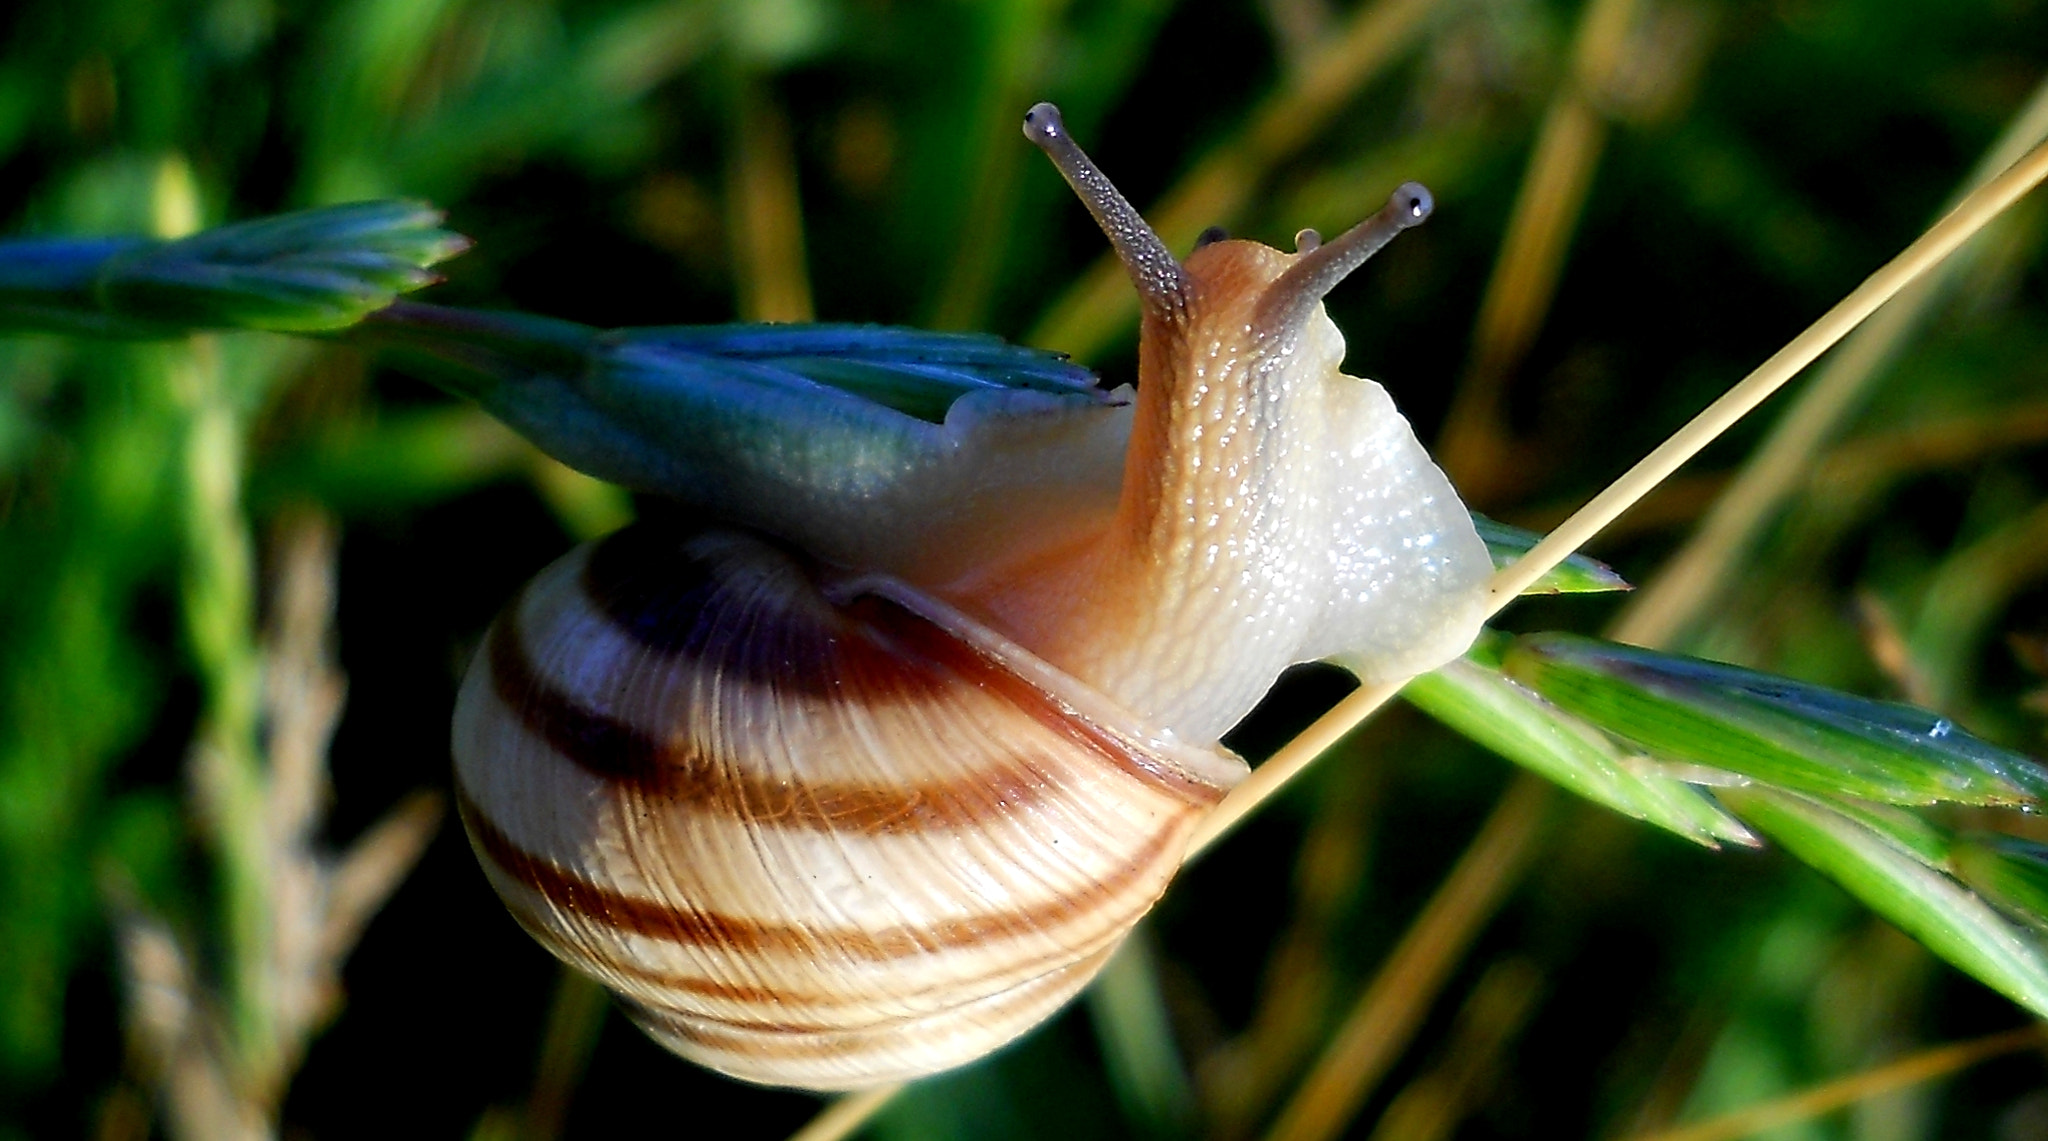 Nikon Coolpix L21 sample photo. Curious snail photography